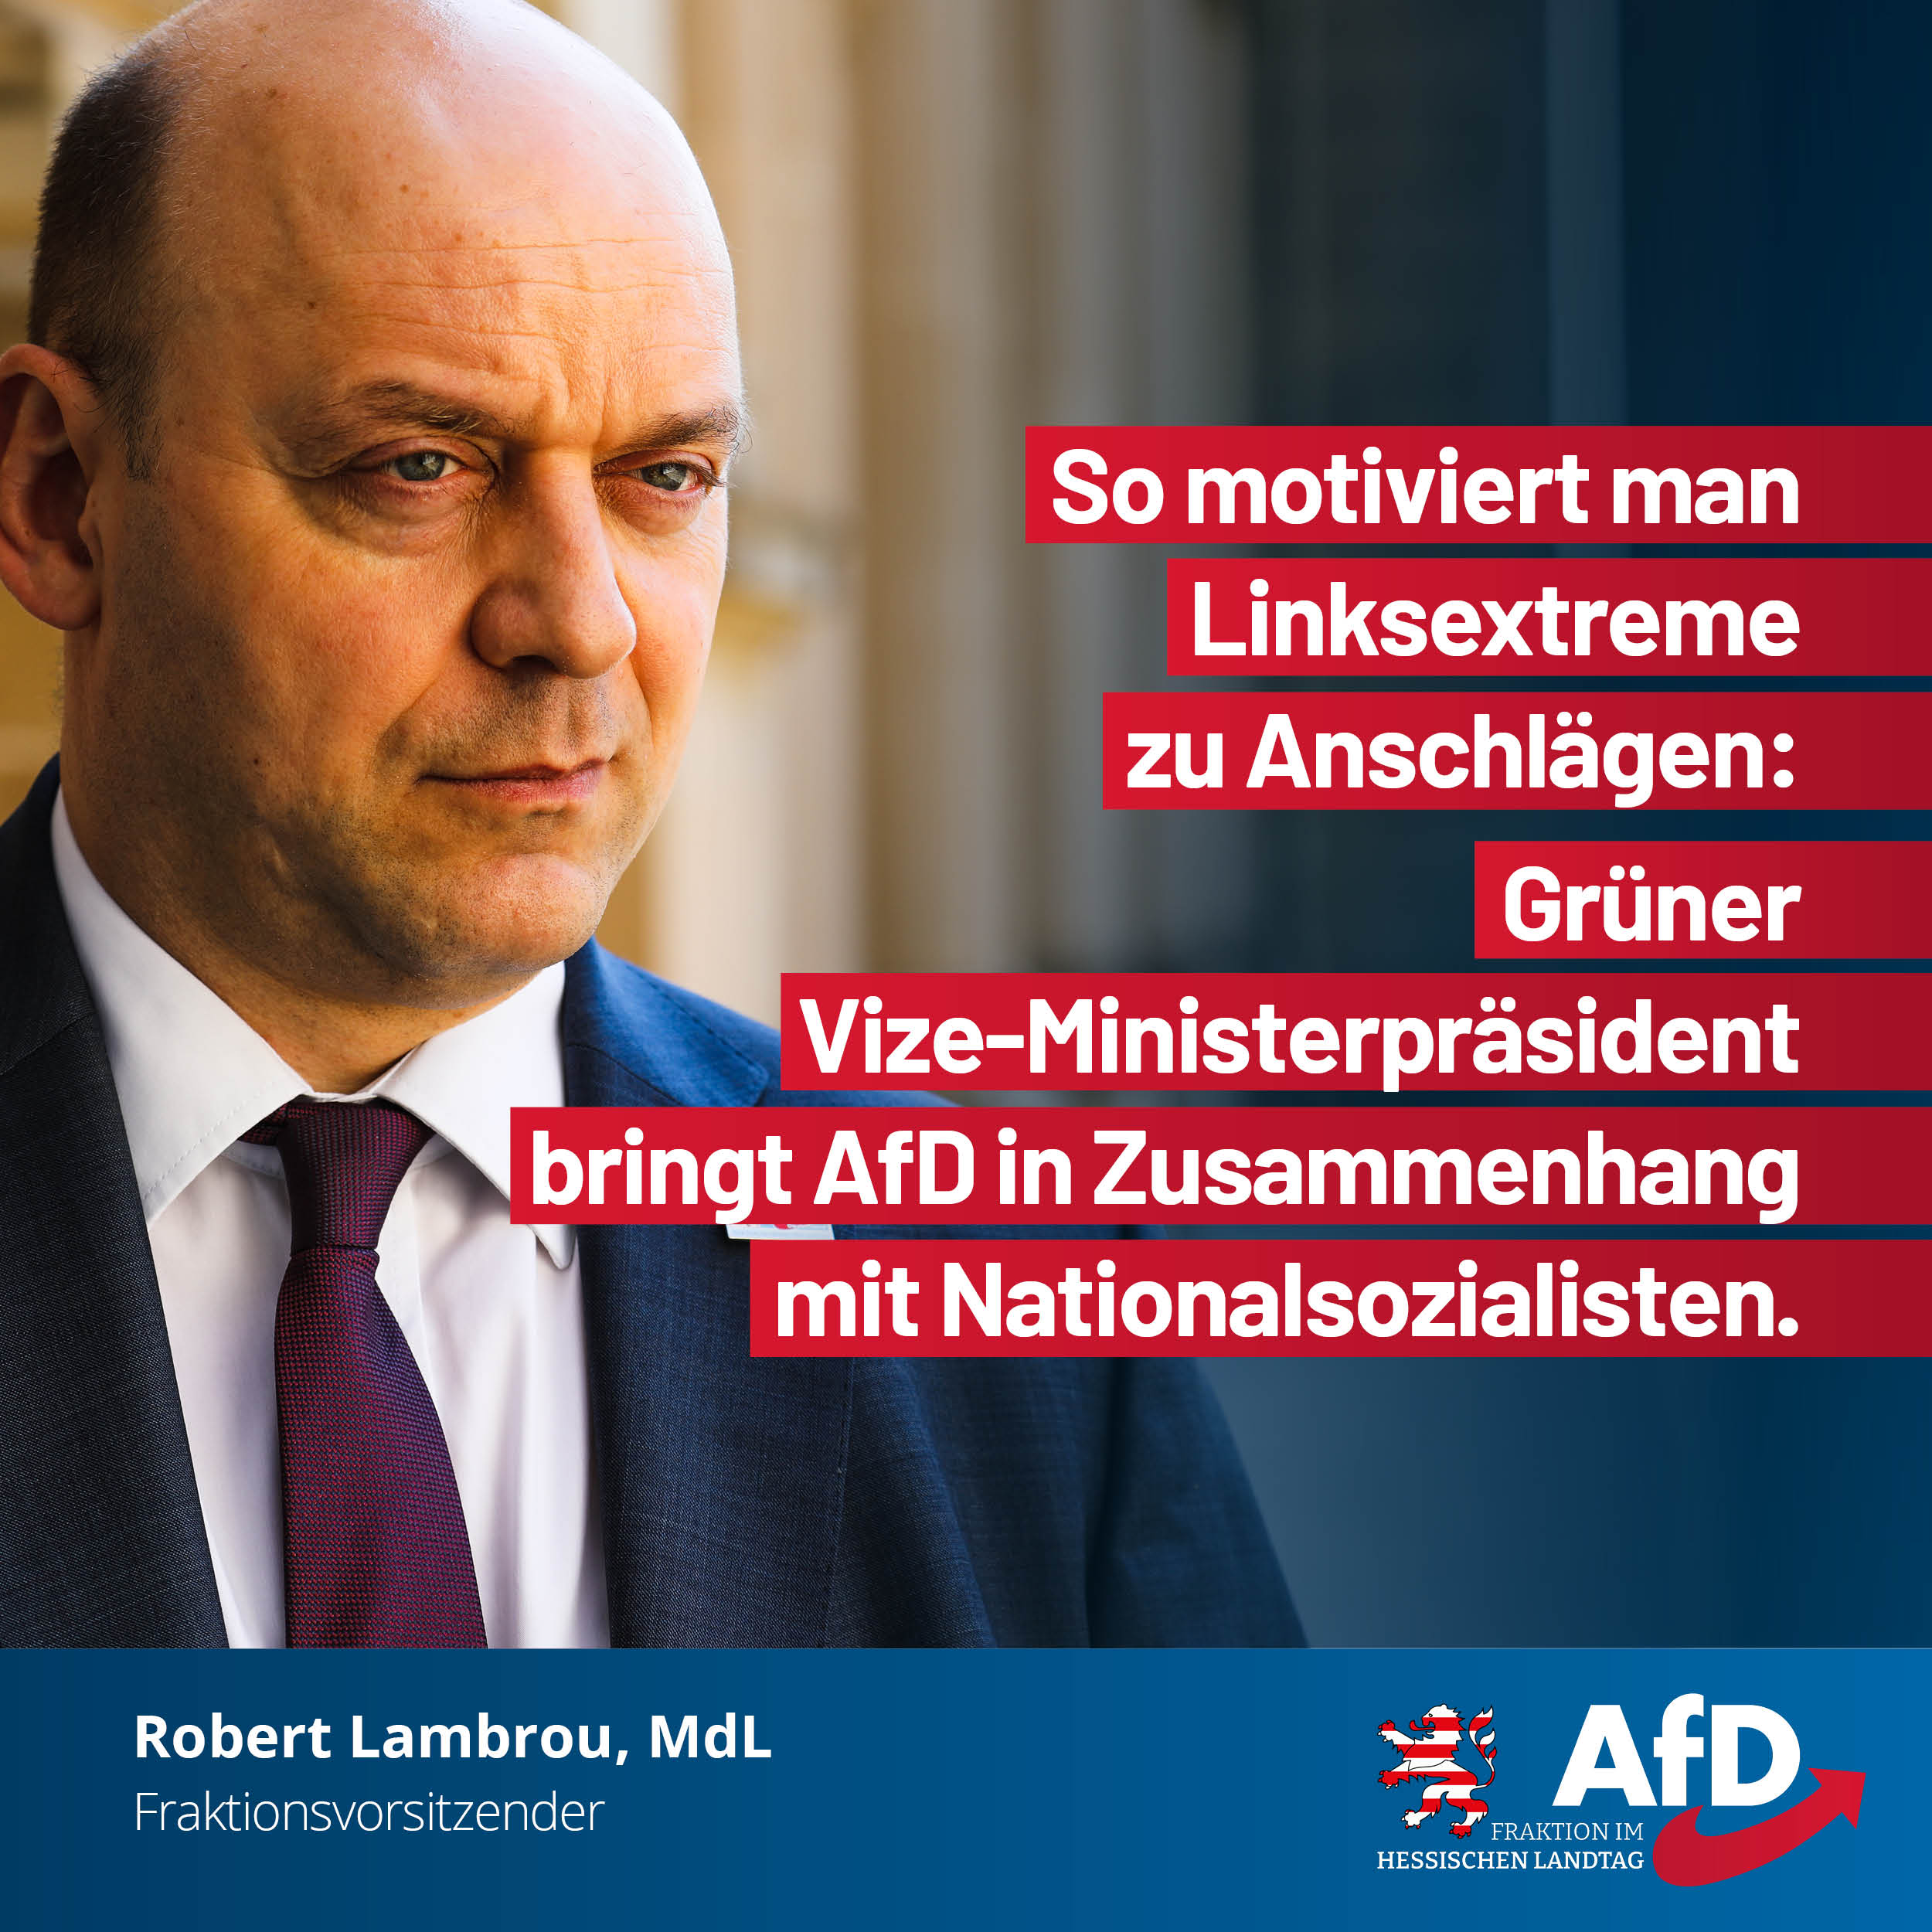 You are currently viewing So motiviert man Linksextreme zu Anschlägen: Grüner Vize-Ministerpräsident bringt AfD in Zusammenhang mit Nationalsozialisten.